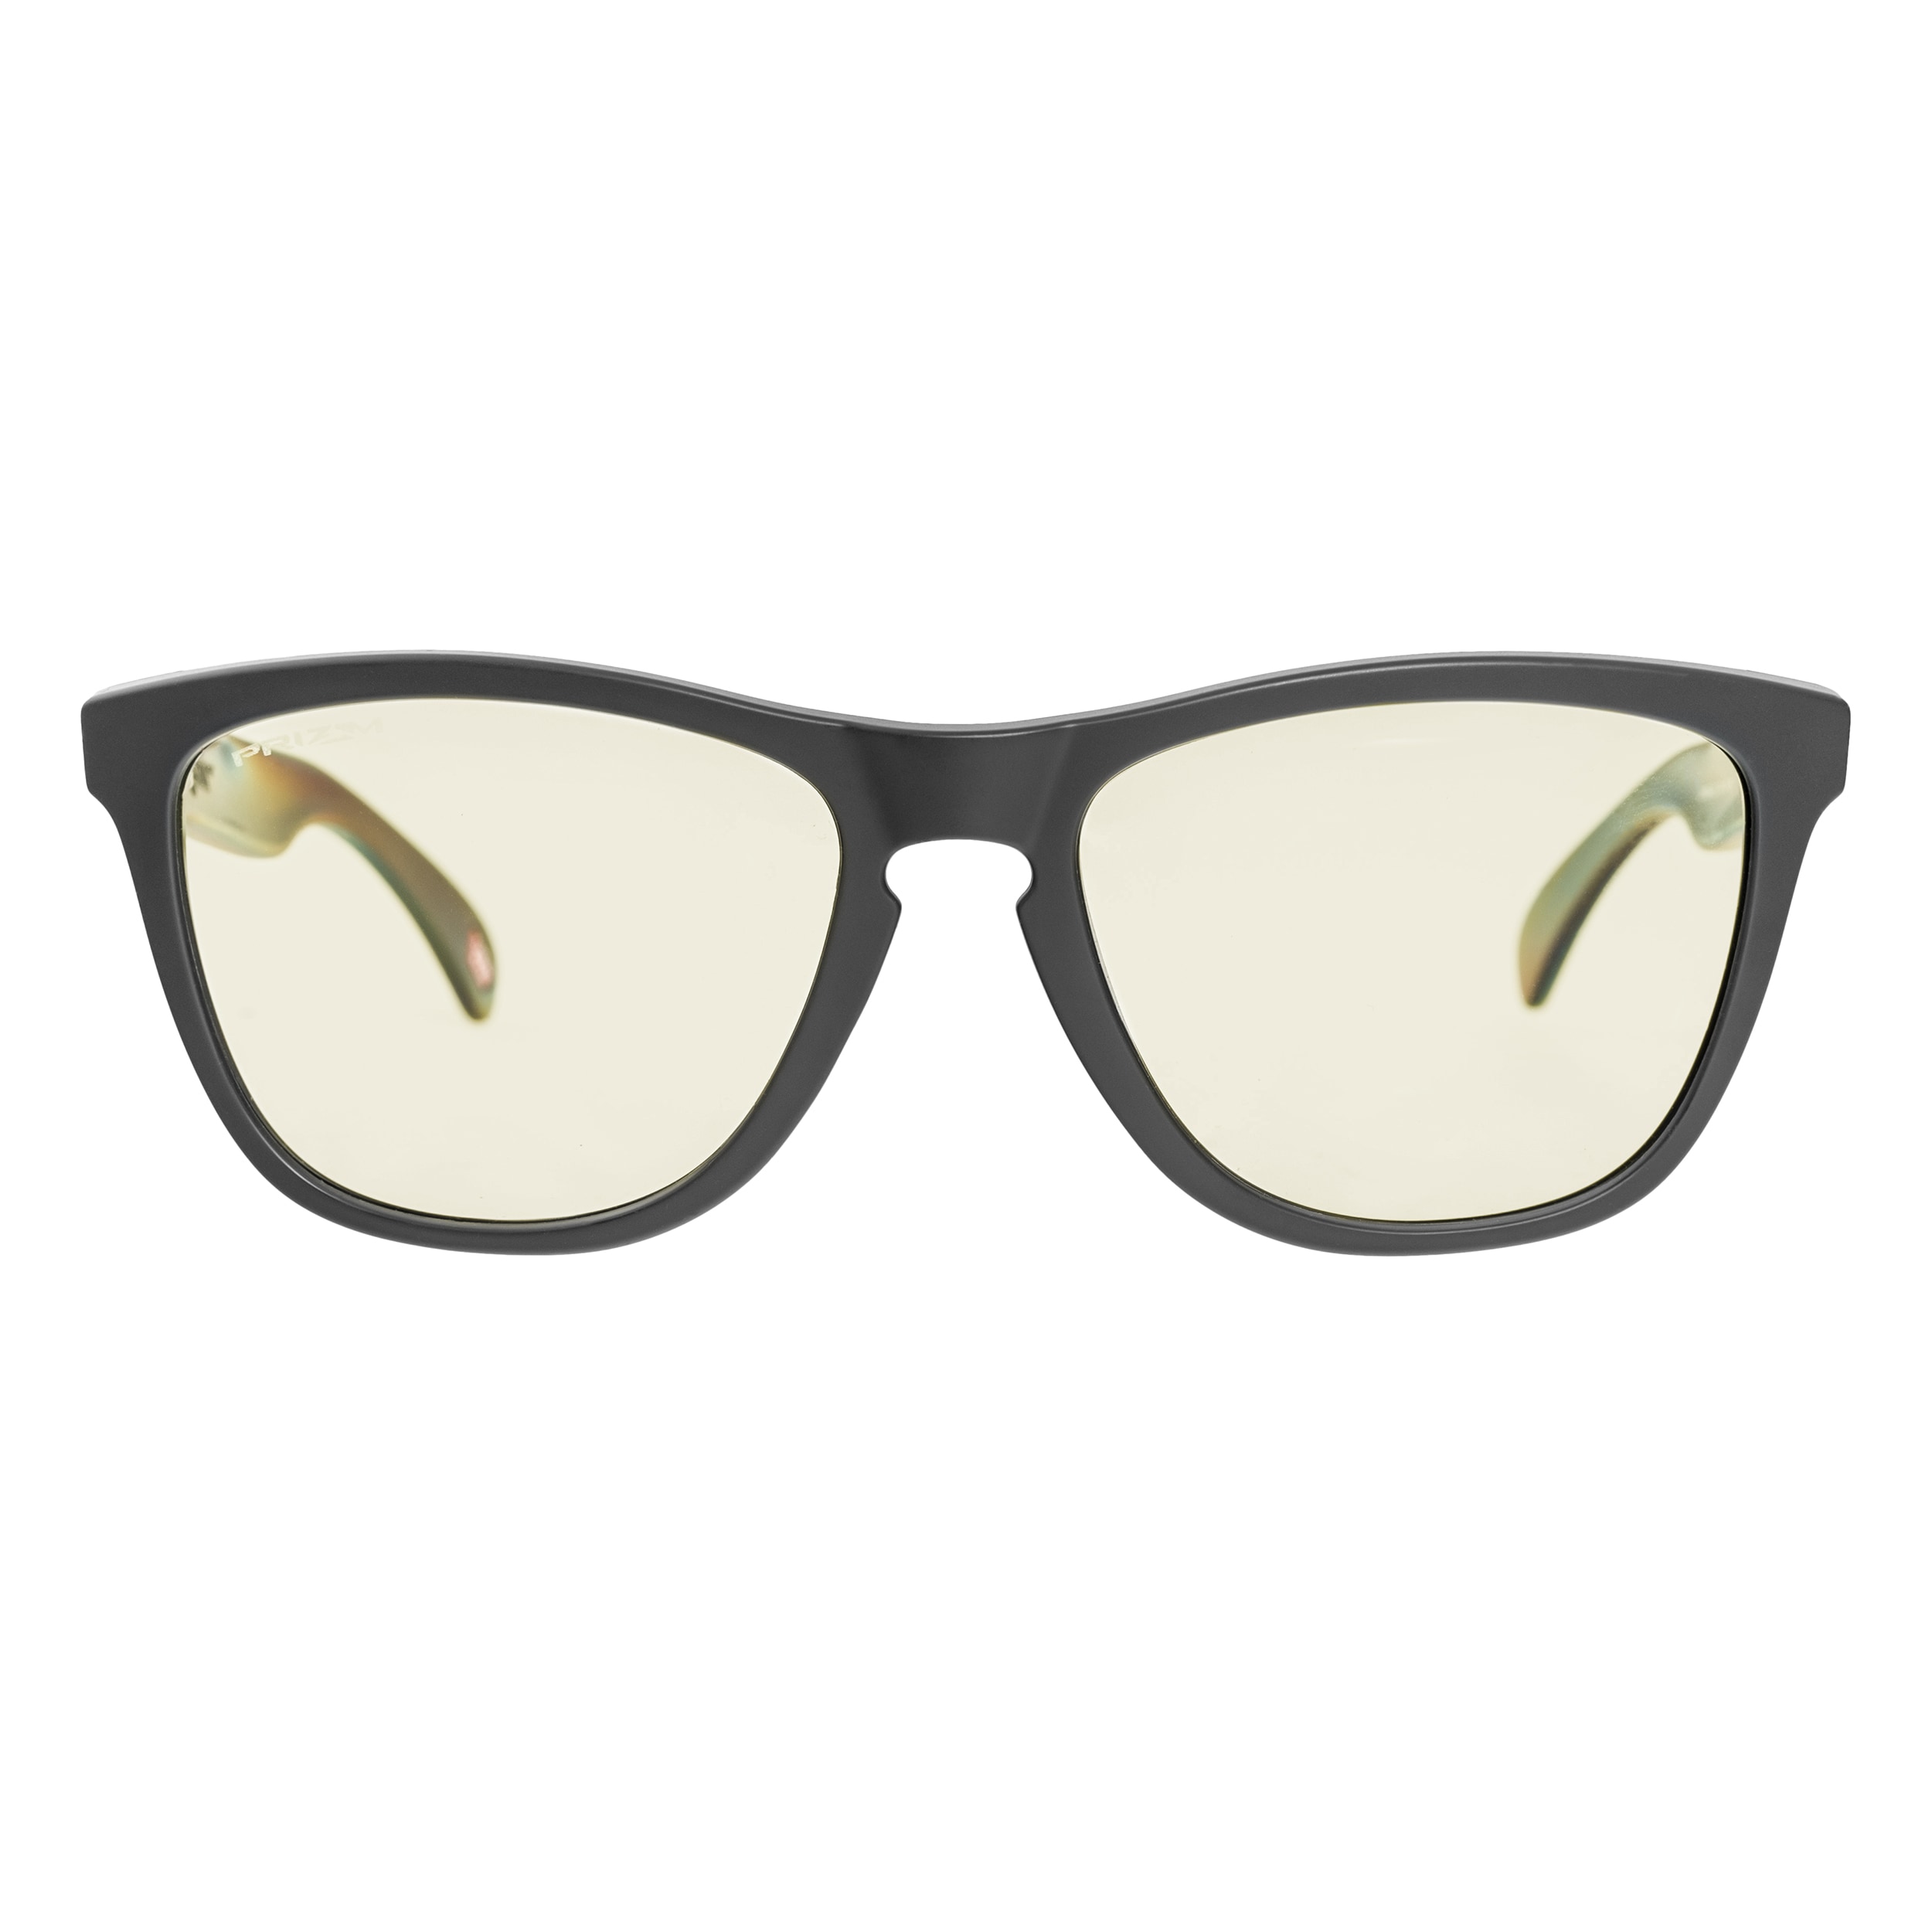 Захисні окуляри Oakley Frogskins - Matte Carbon/Prizm Gaming